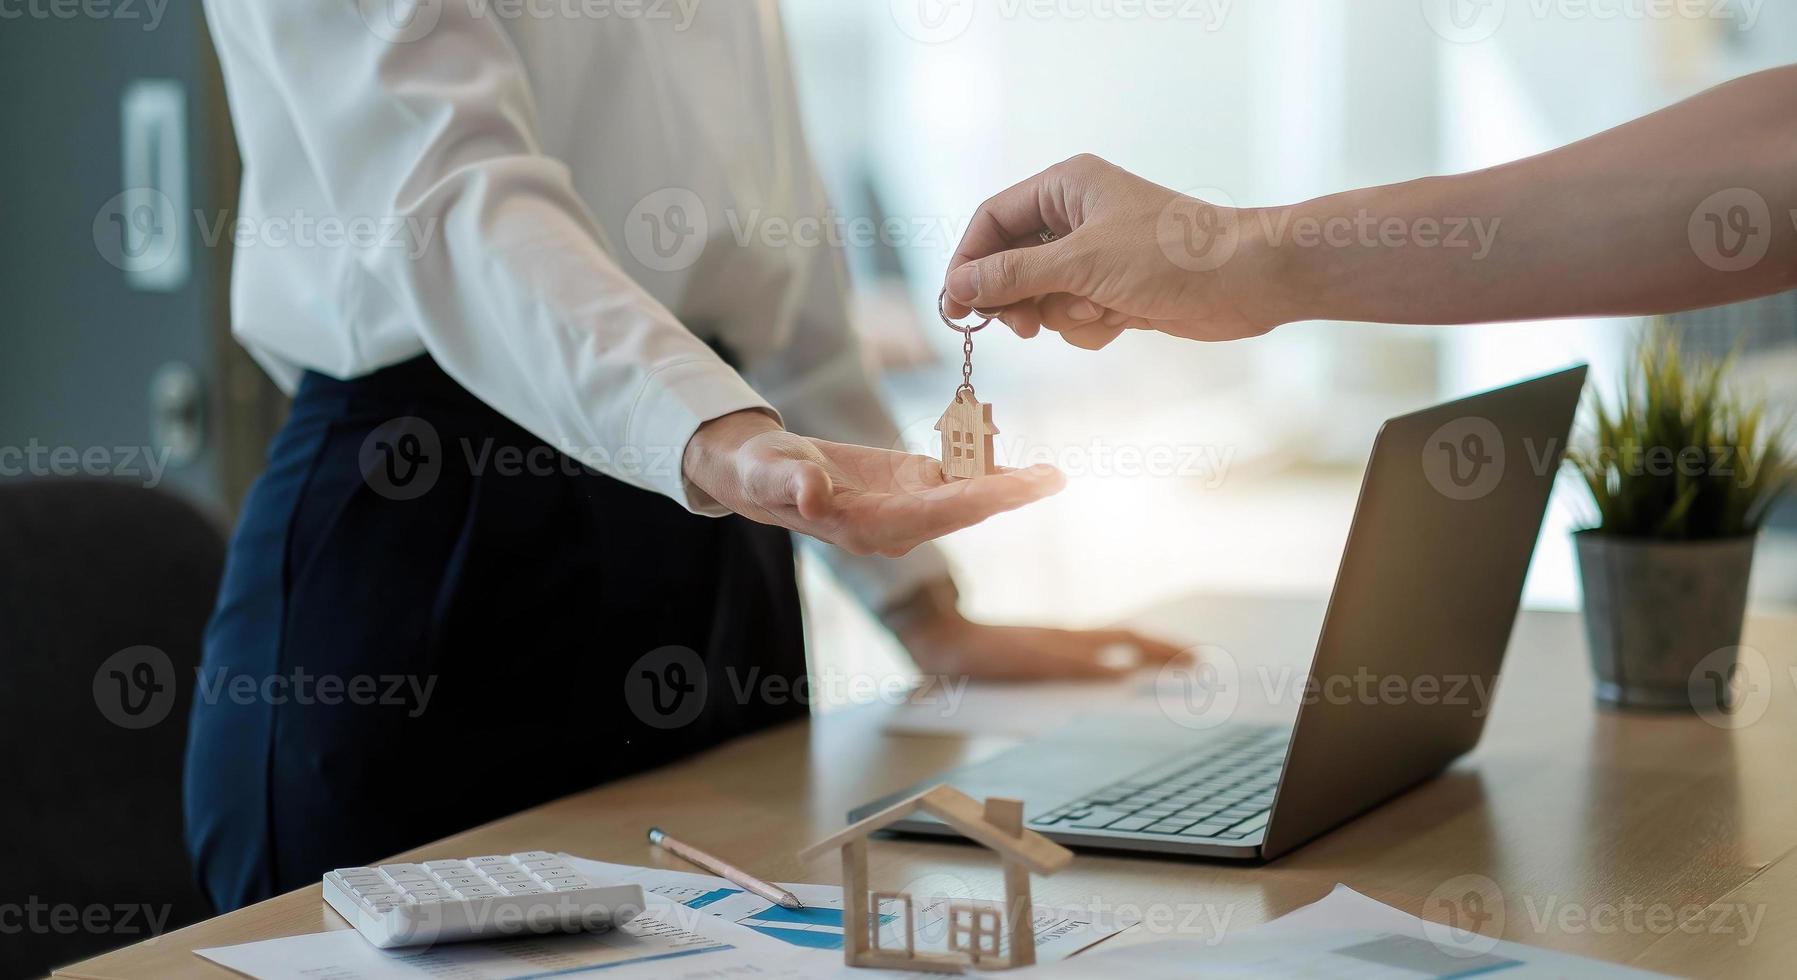 agente immobiliare che tiene la chiave di casa al suo cliente dopo aver firmato un contratto in ufficio, concetto di immobile, trasloco o affitto di proprietà foto